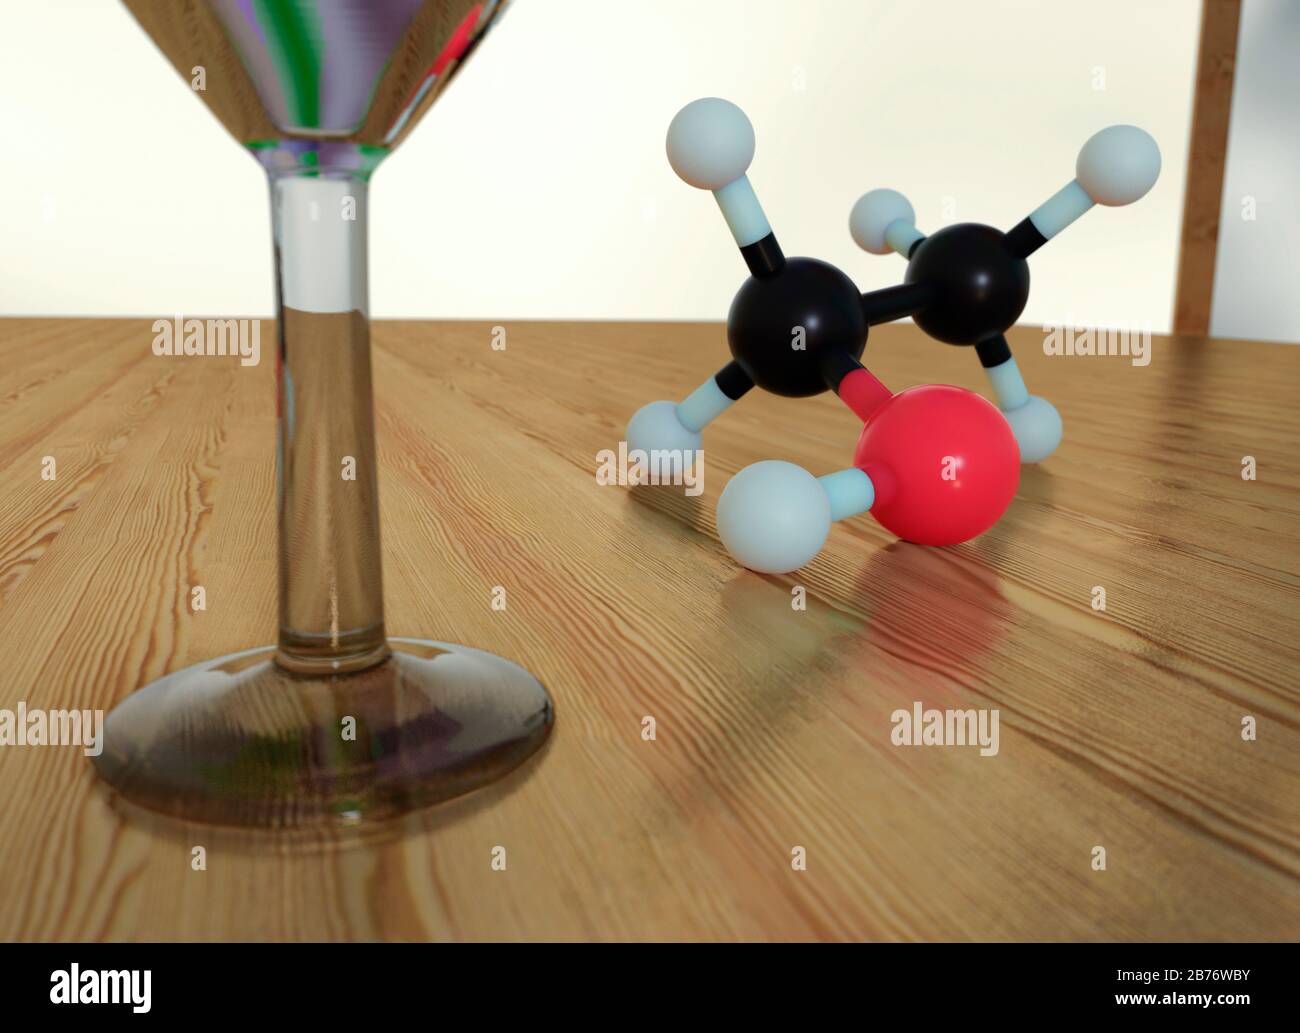 Martini-Glas und Modell des Ethanolmoleküls (Alkohol). Das Molekül hat zwei Kohlenstoff-, einen Sauerstoff- und sechs Wasserstoffatome. Stockfoto